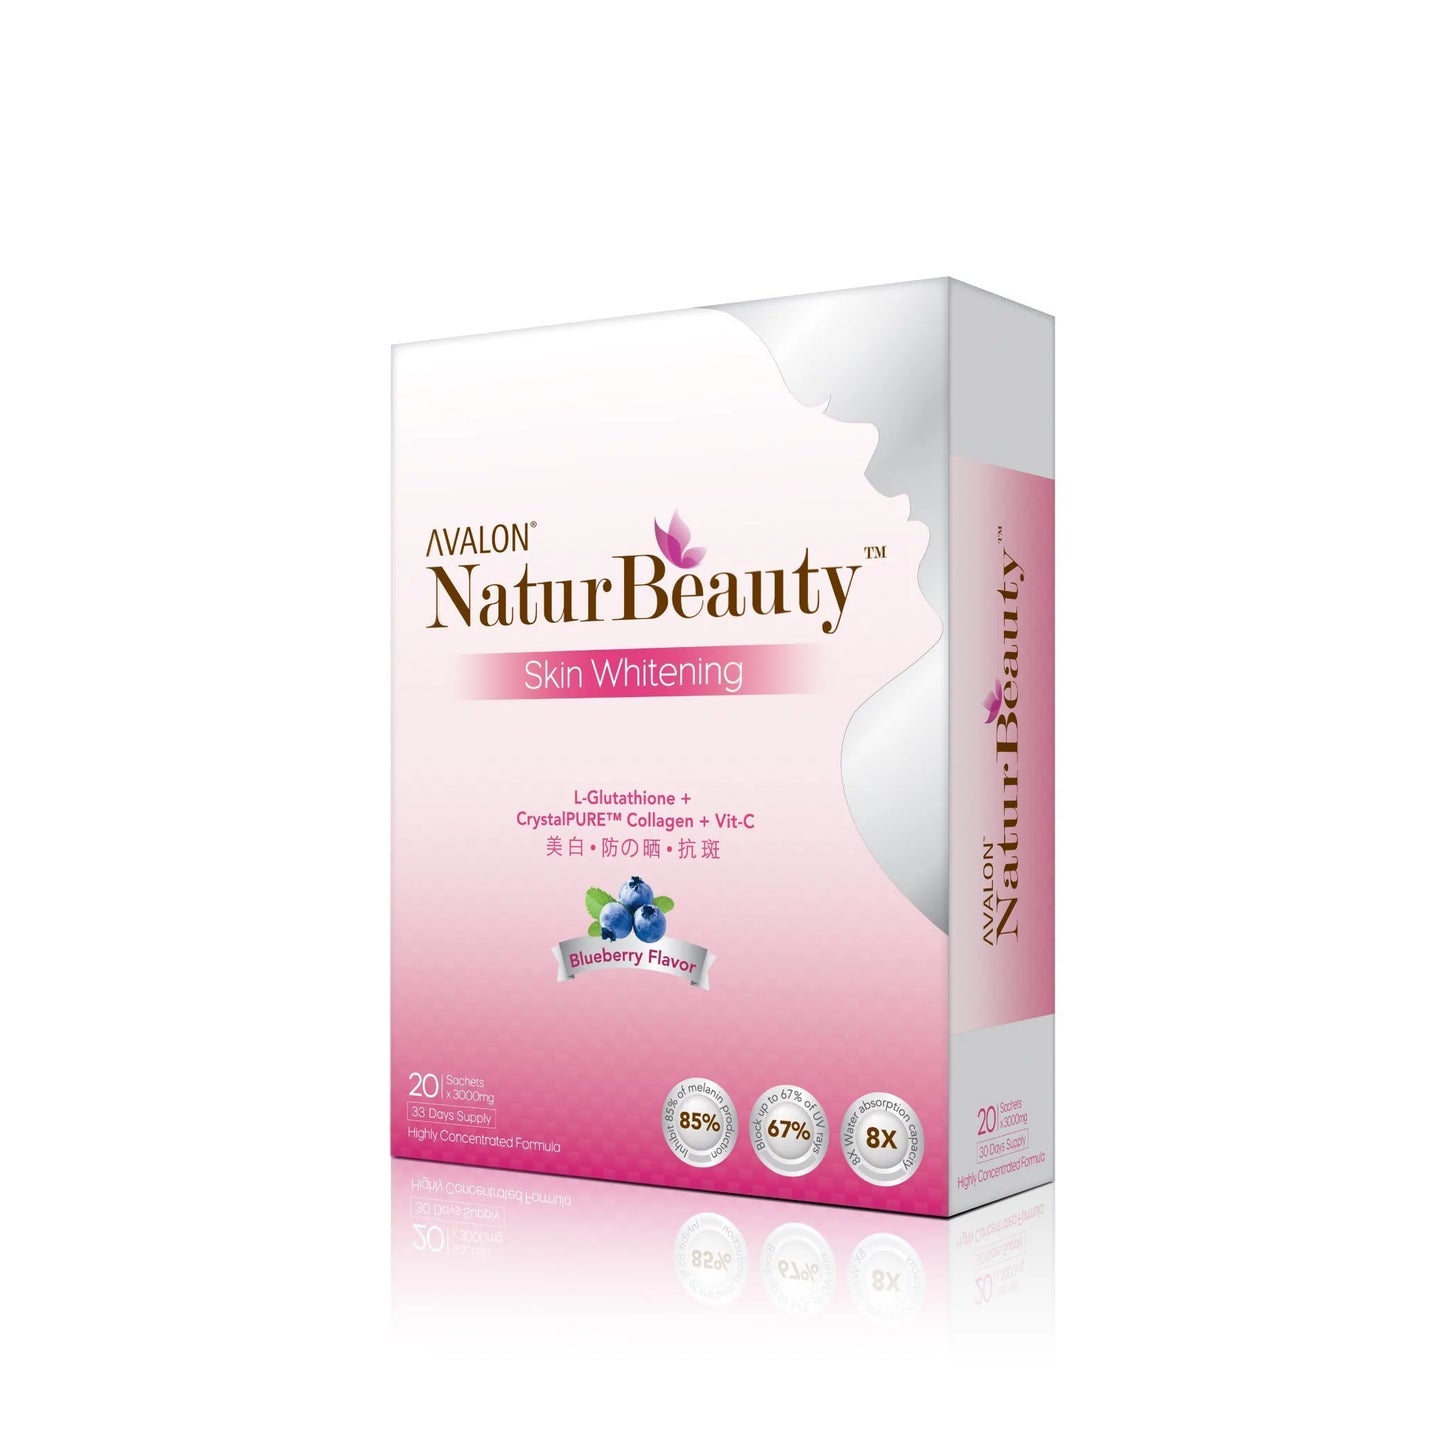 AVALON® NaturBeauty Skin Whitening (CrystalPure Collagen + Glutathione)